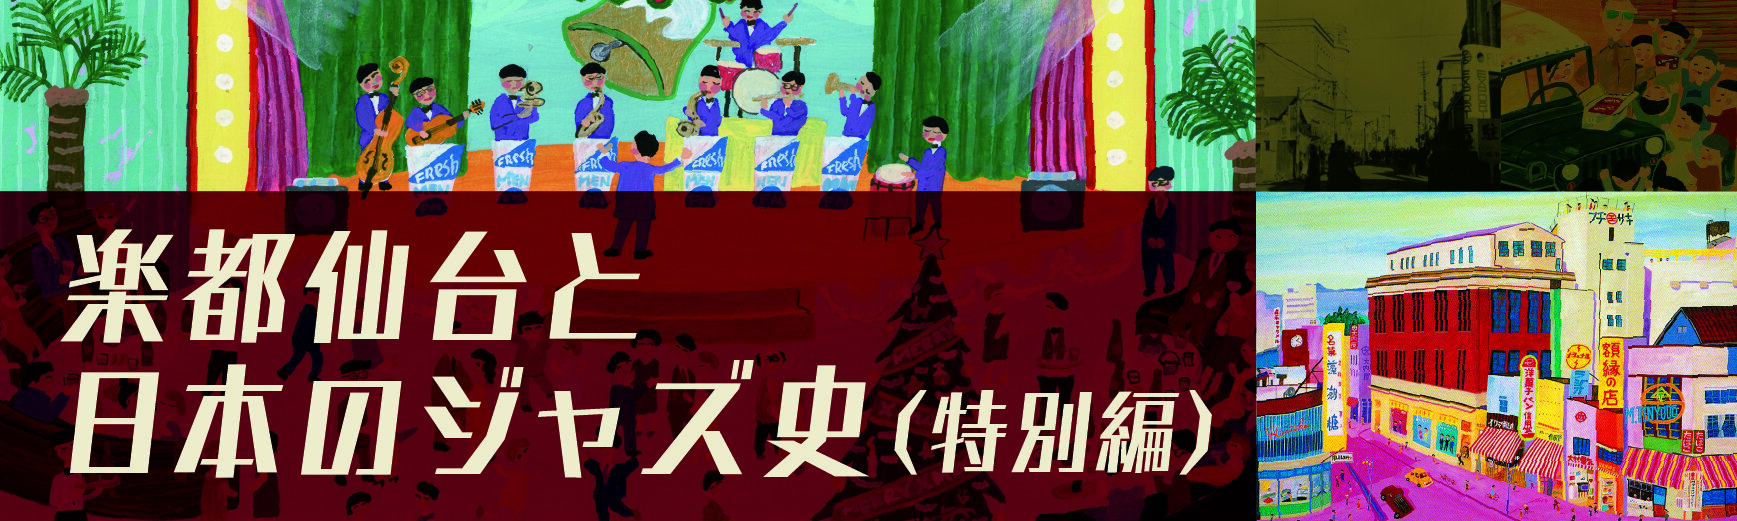 特別篇《樂都仙台和日本的爵士史~戰後GHQ到哈科班文化的軌跡~》視頻發布中